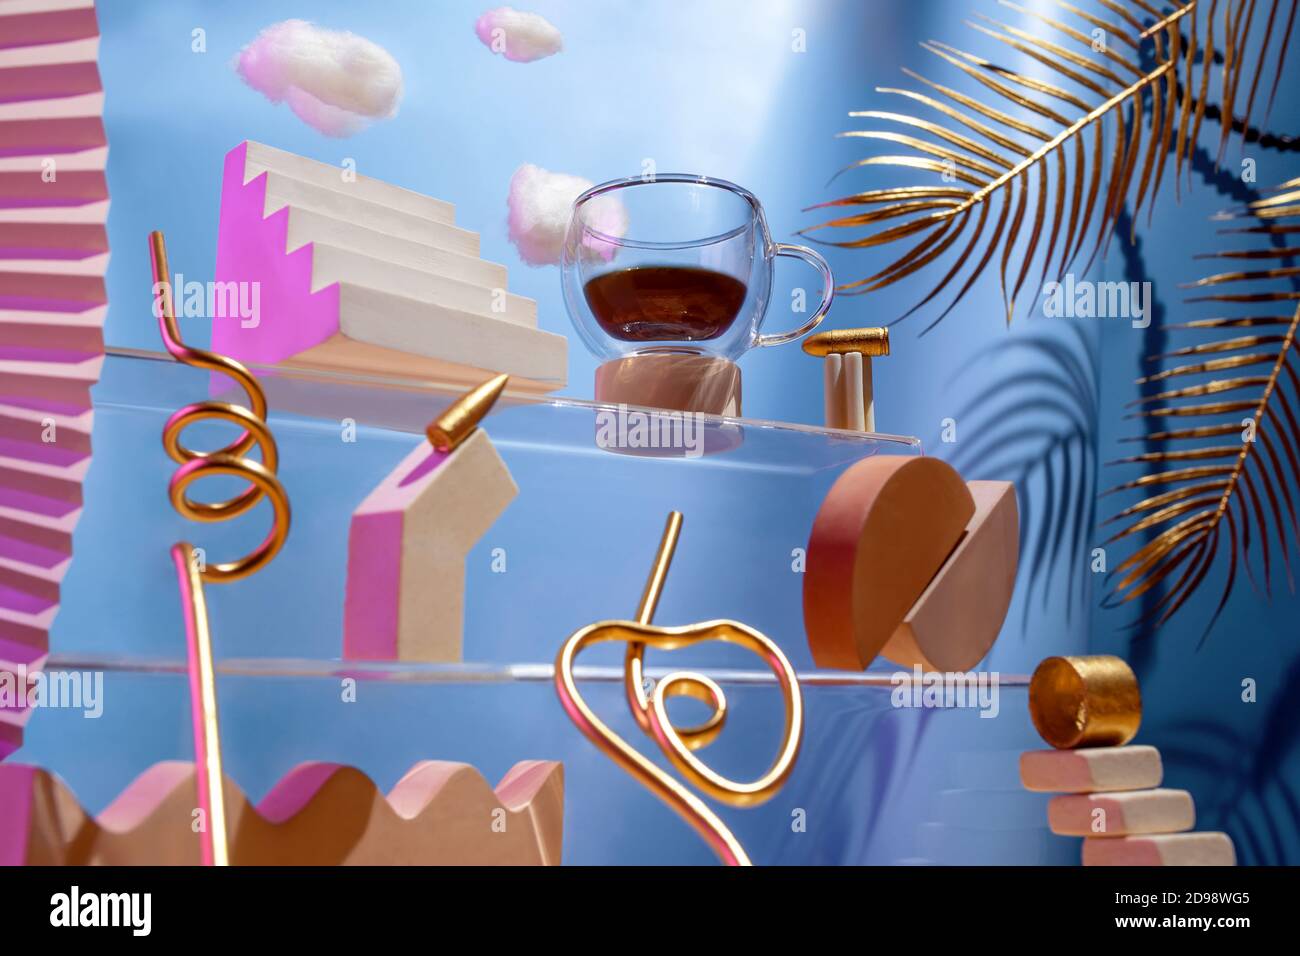 Composizione futuristica sul tema del caffè, varie figure, proiettili, nuvole sulle scale su sfondo blu, il concetto di carica energetica Foto Stock